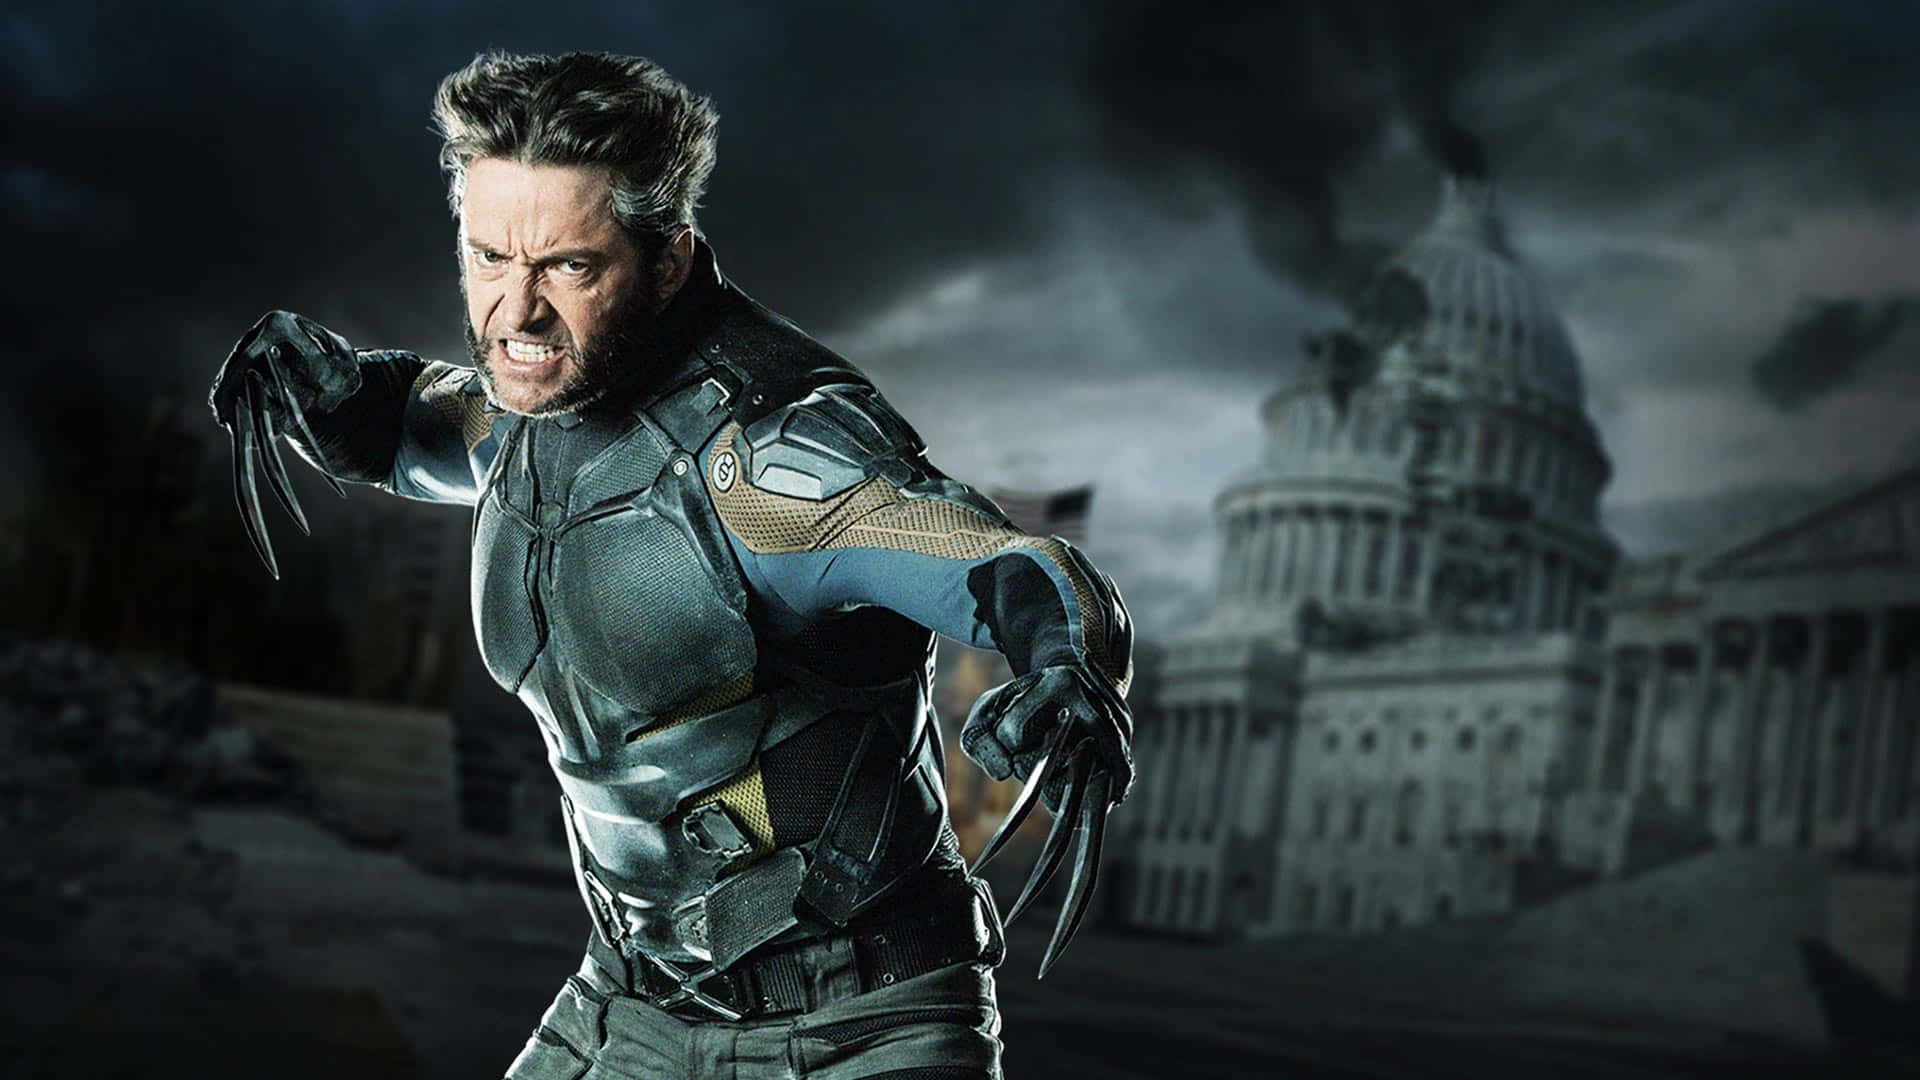 An Intense Portrait Of Wolverine